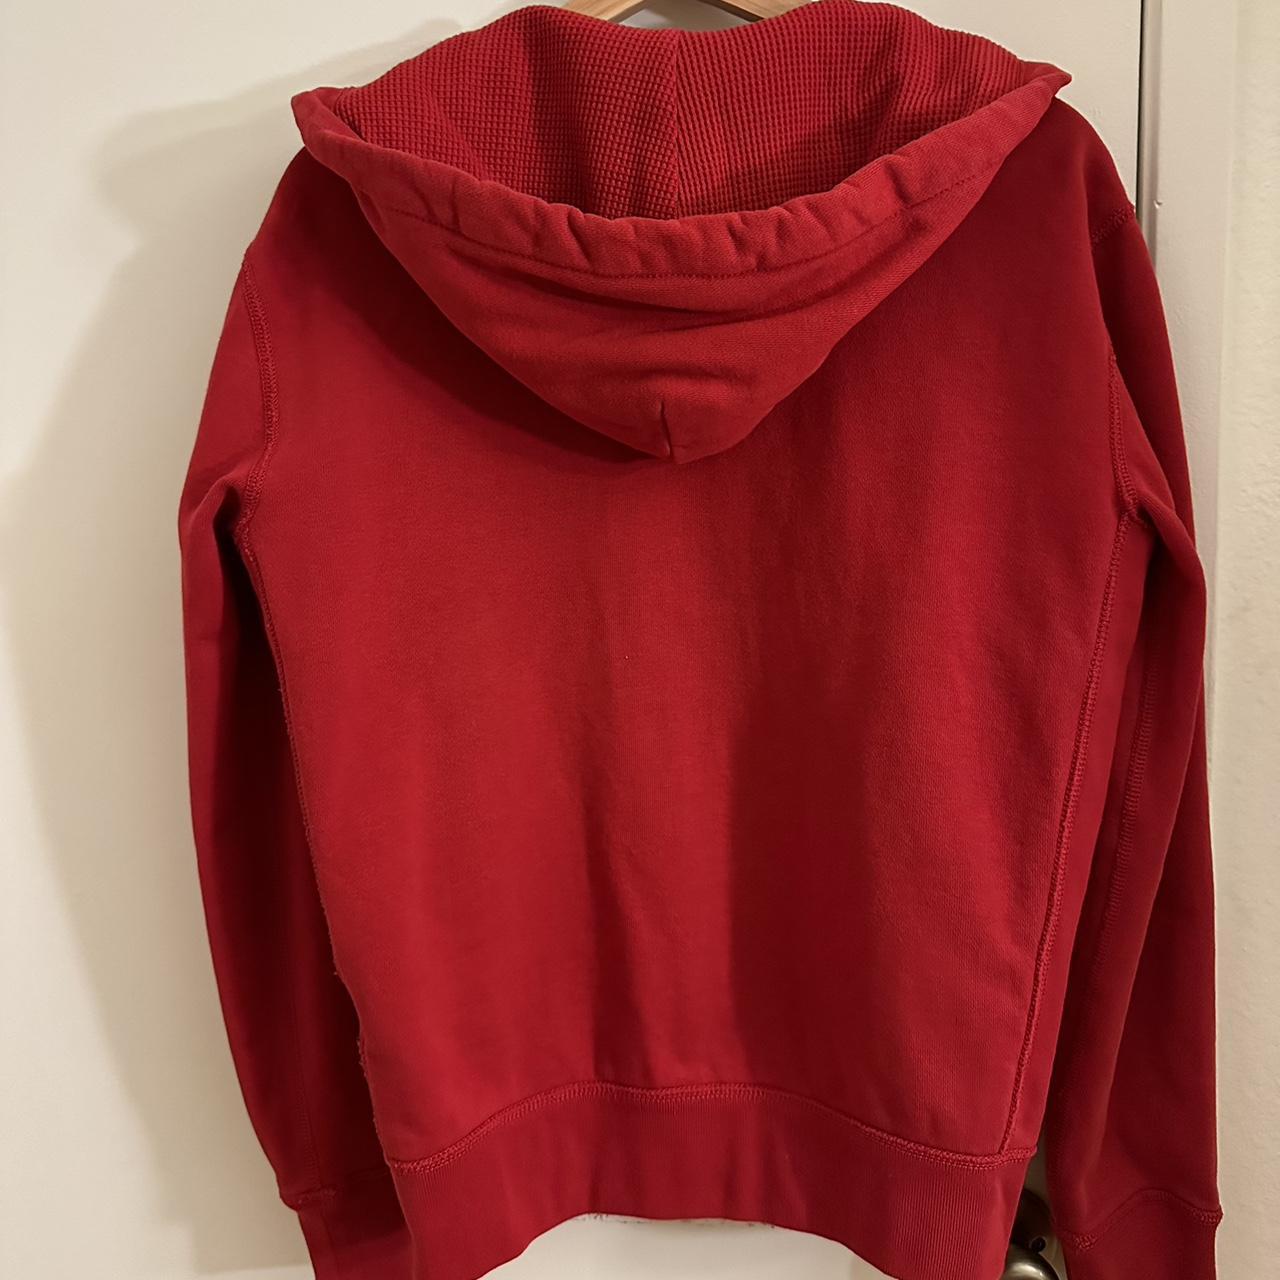 Polo Ralph Lauren zip-up hoodie Fits size S and... - Depop